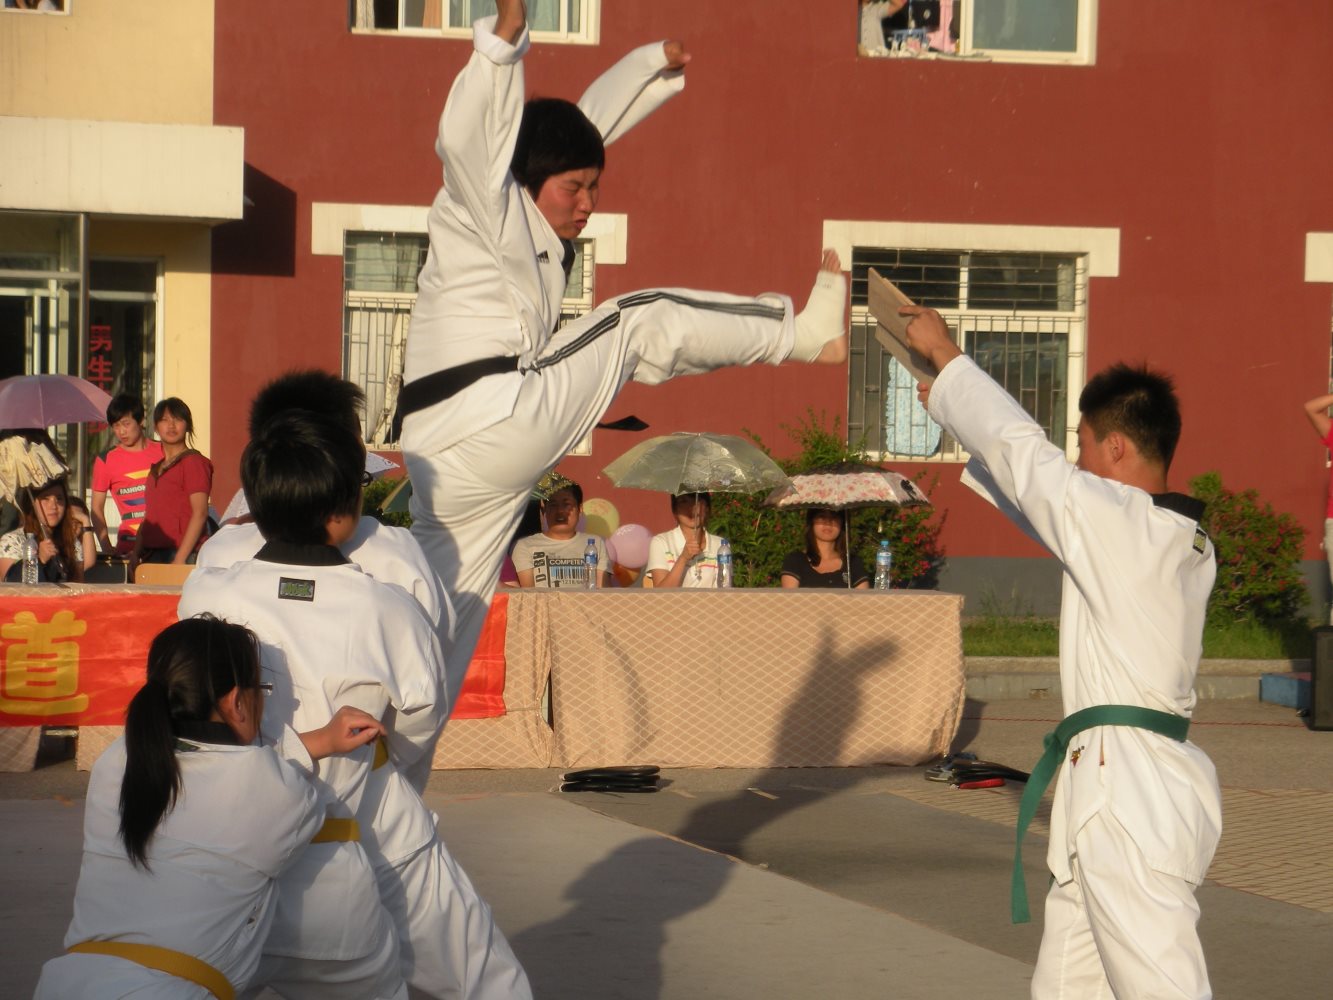 社团文化节系列活动——“跆拳道协会”的跆拳道表演